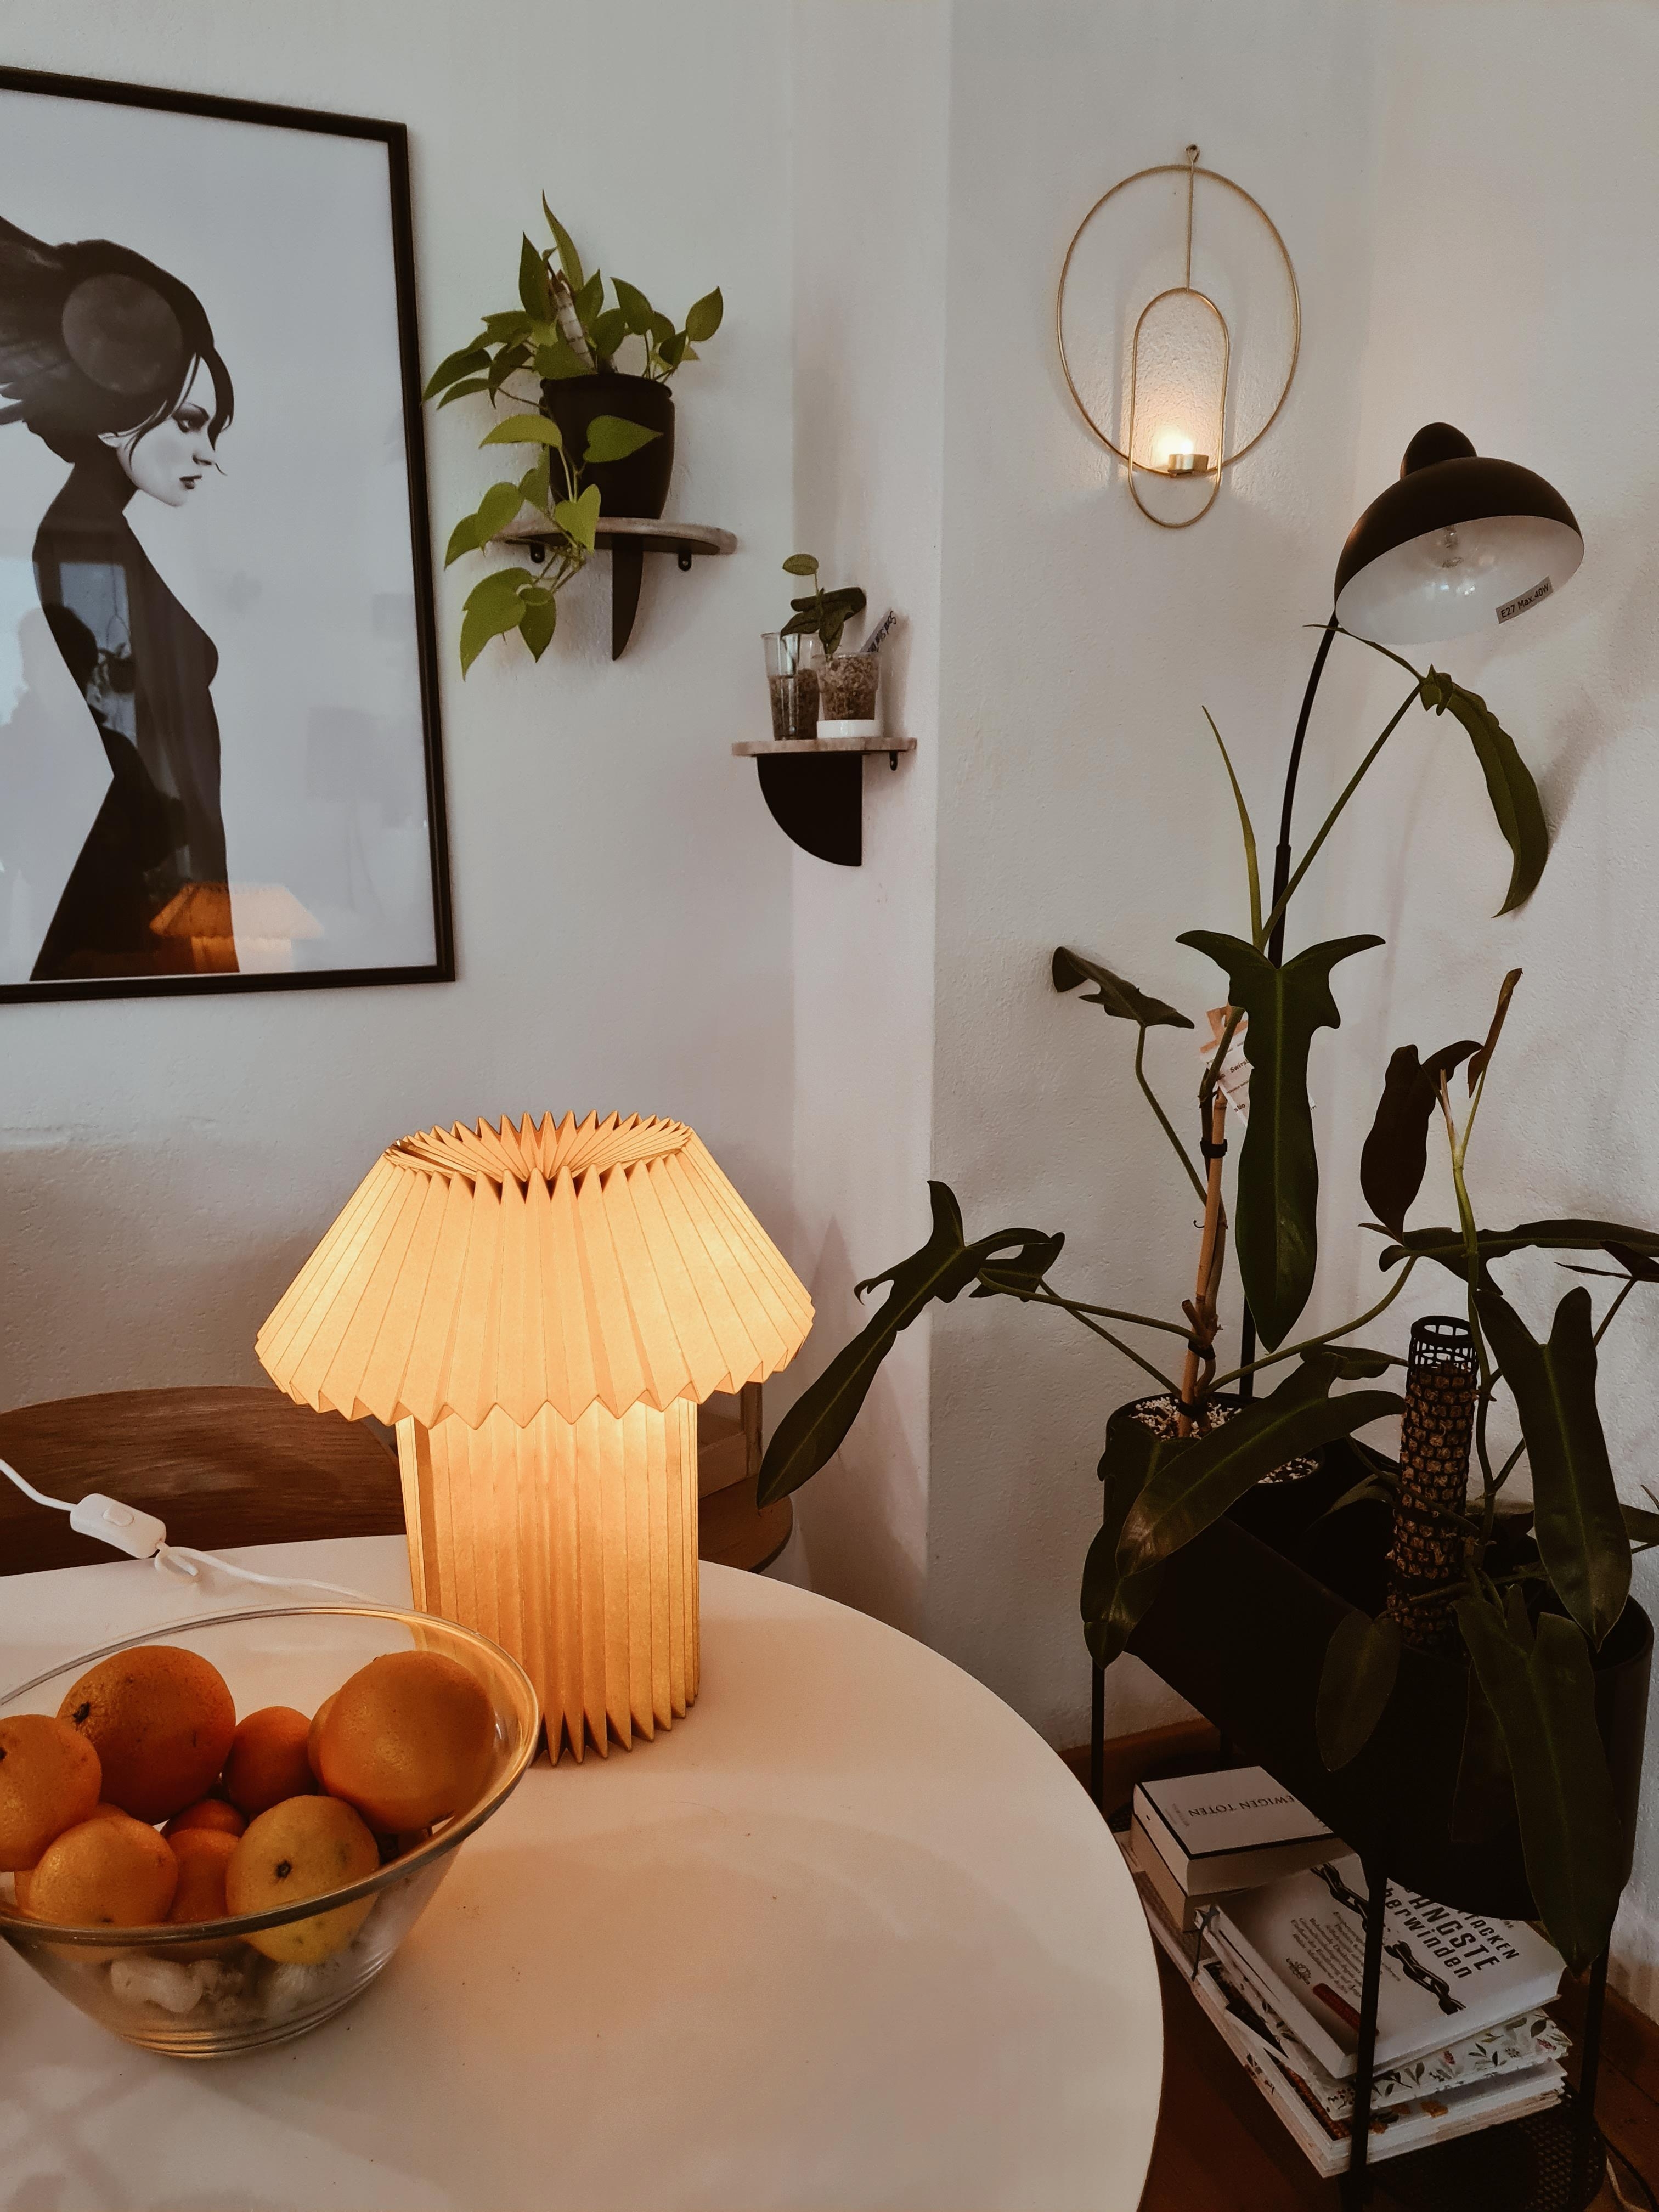 Lampenliebe🩷🩷
#interior #livingroom #plants #pflanzenliebe #interiorlove #deko #gemütlich